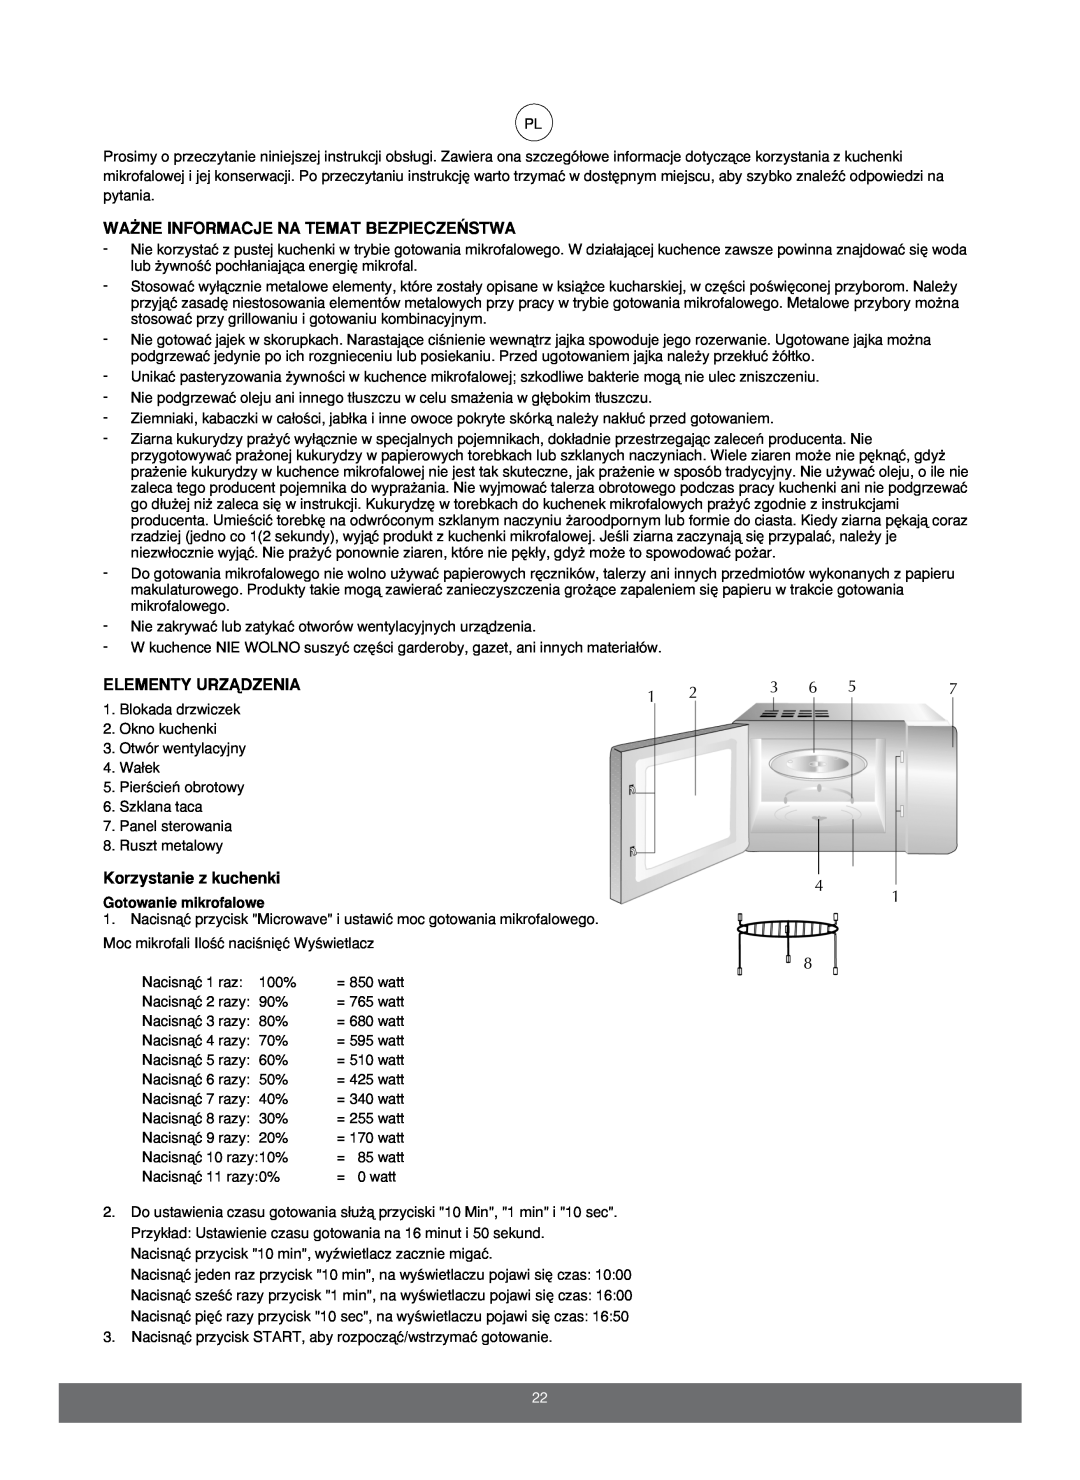 Melissa 653103 manual Wa˚Ne Informacje Na Temat Bezpiecze¡Stwa, Elementy Urzñdzenia, Korzystanie z kuchenki 